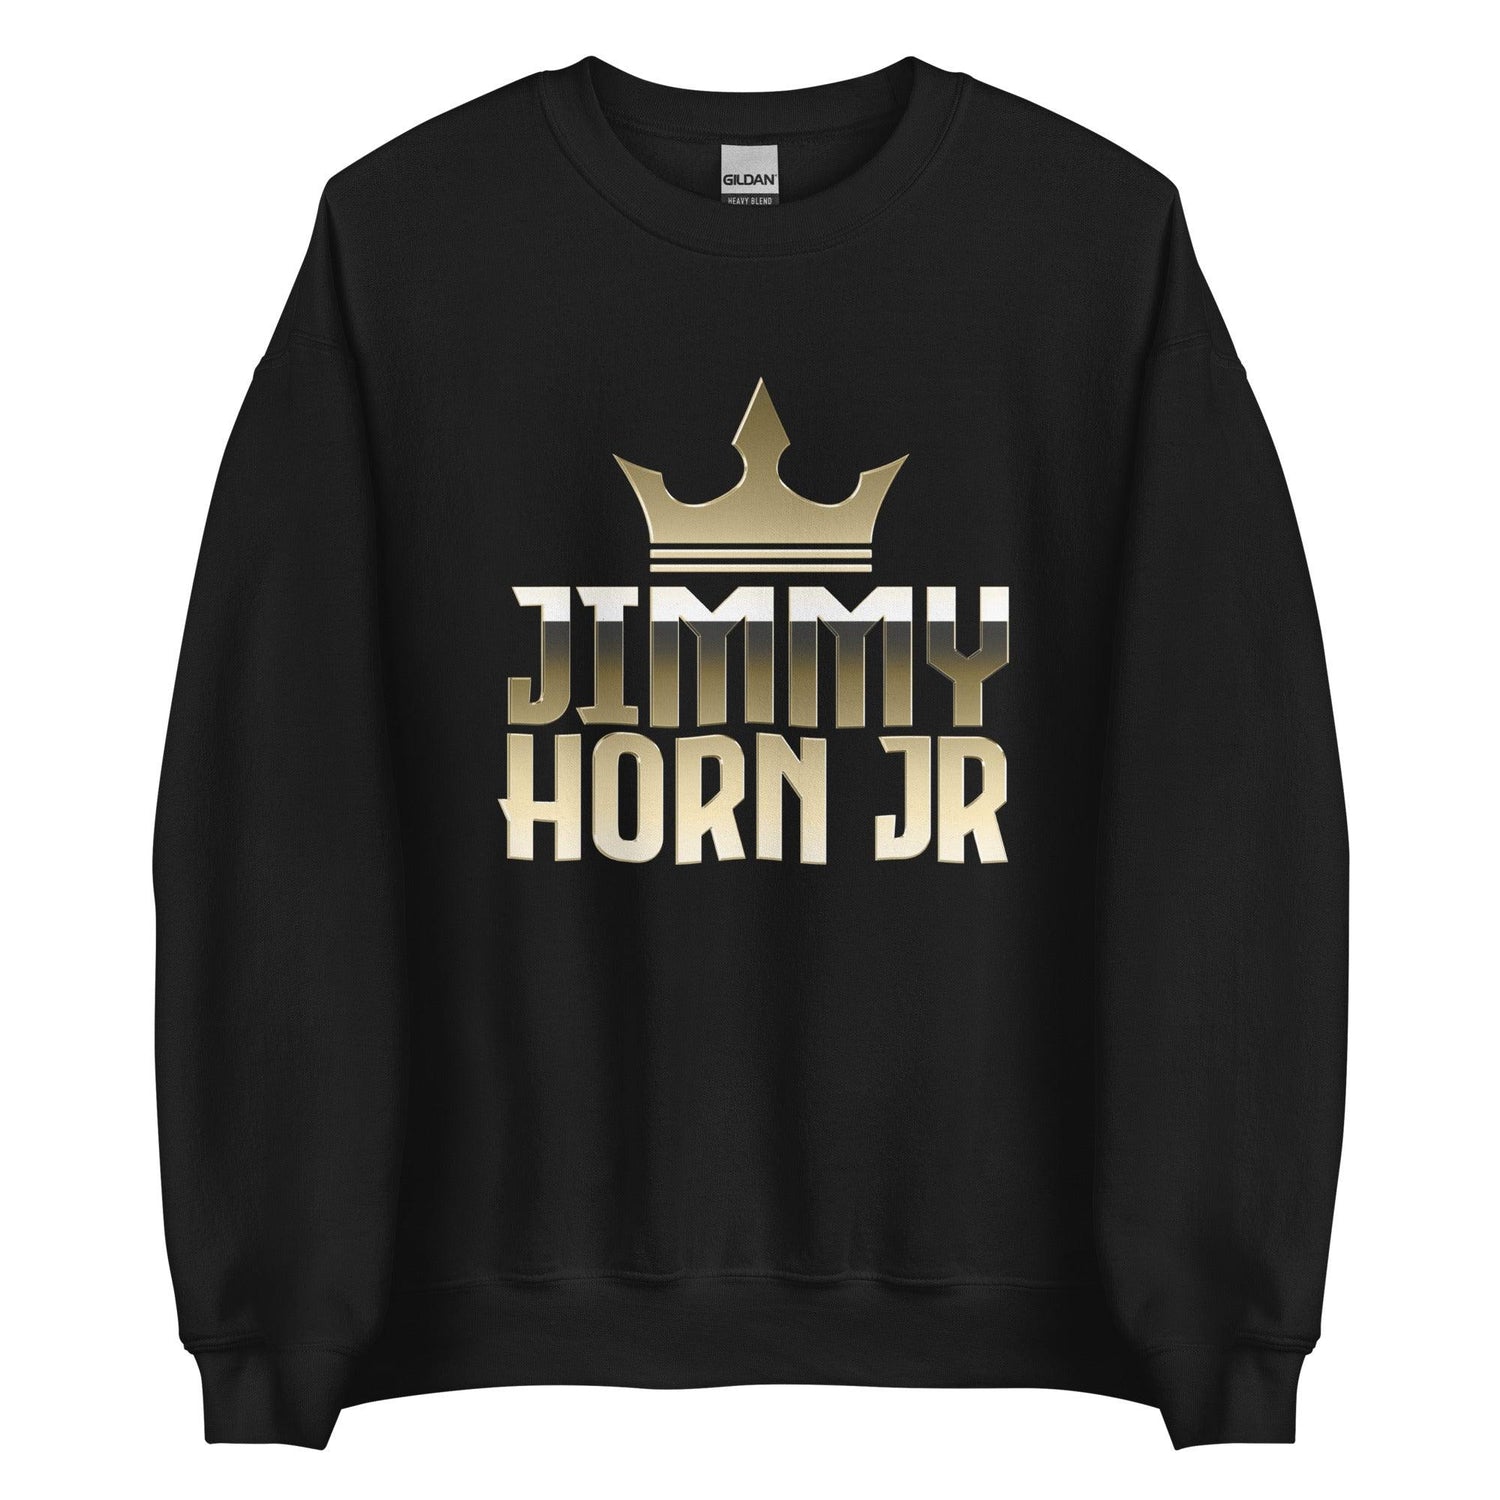 Jimmy Horn Jr. "Essential" Sweatshirt - Fan Arch